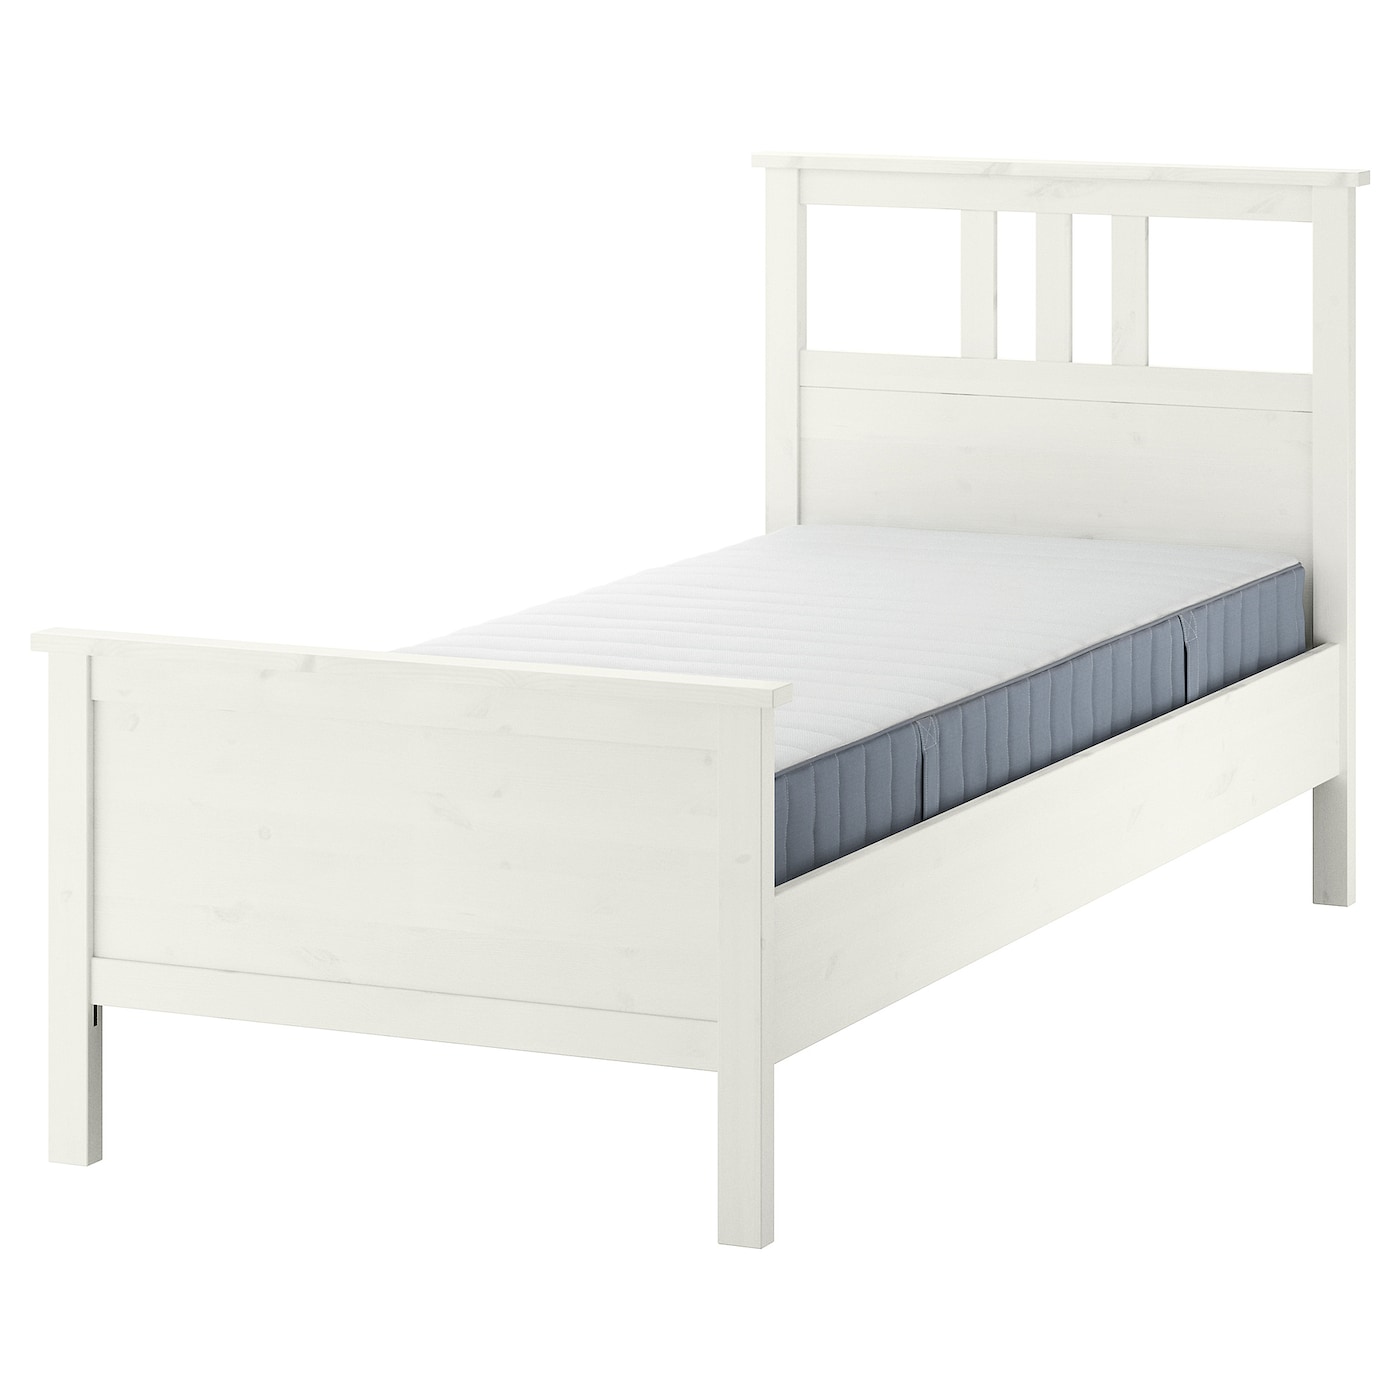 Кровать - IKEA HEMNES, 200х90 см, матрас средне-жесткий, белый, ХЕМНЭС ИКЕА